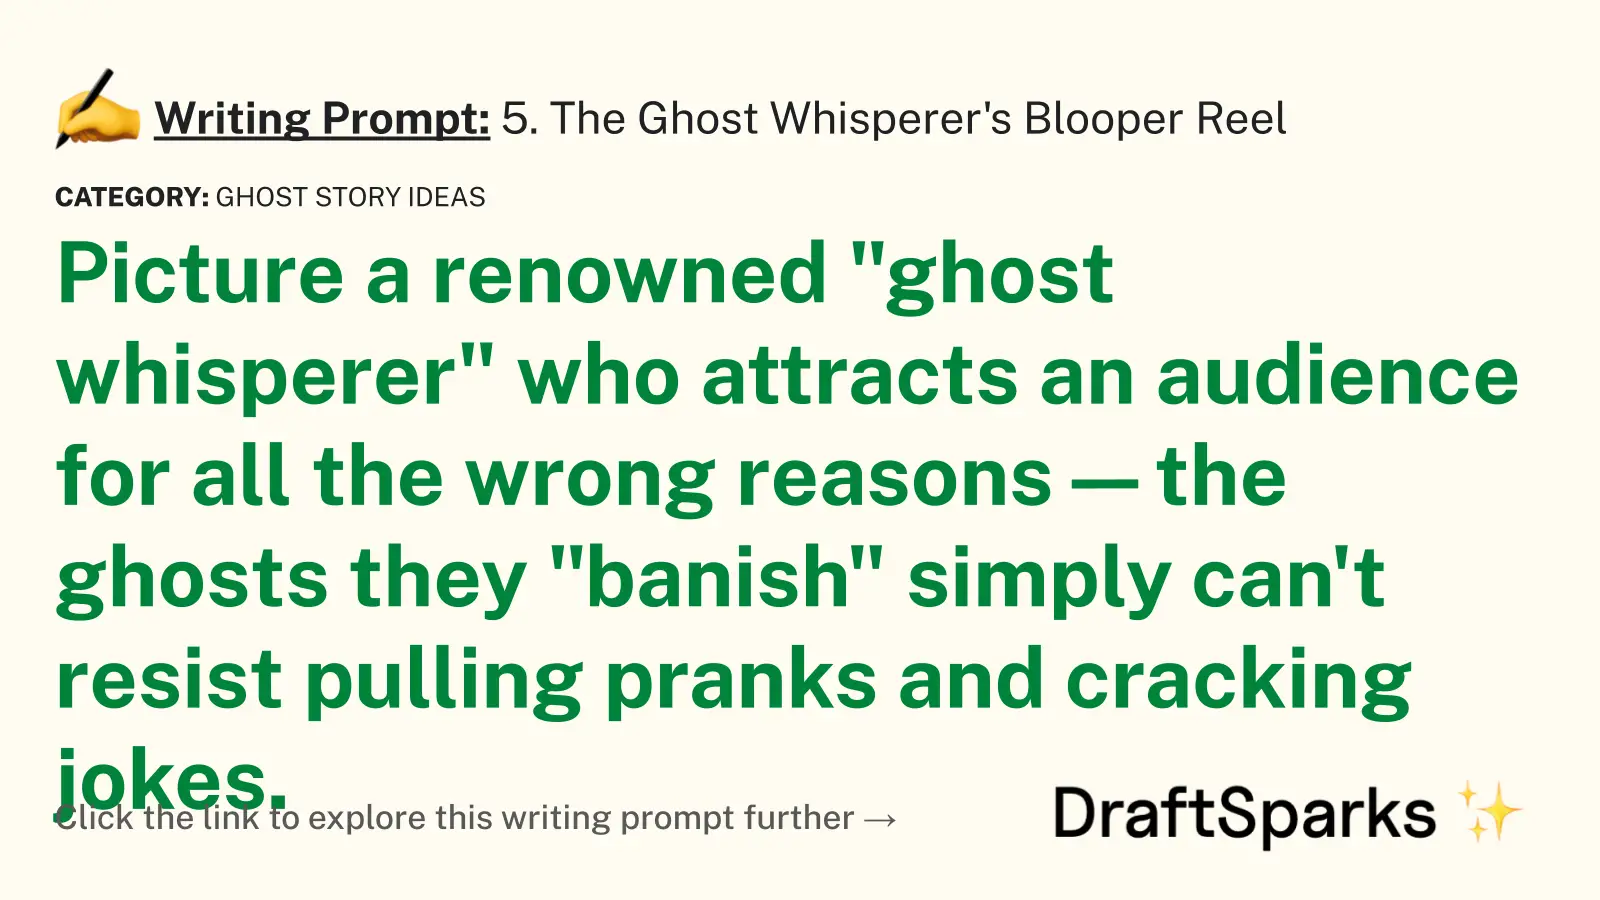 5. The Ghost Whisperer’s Blooper Reel